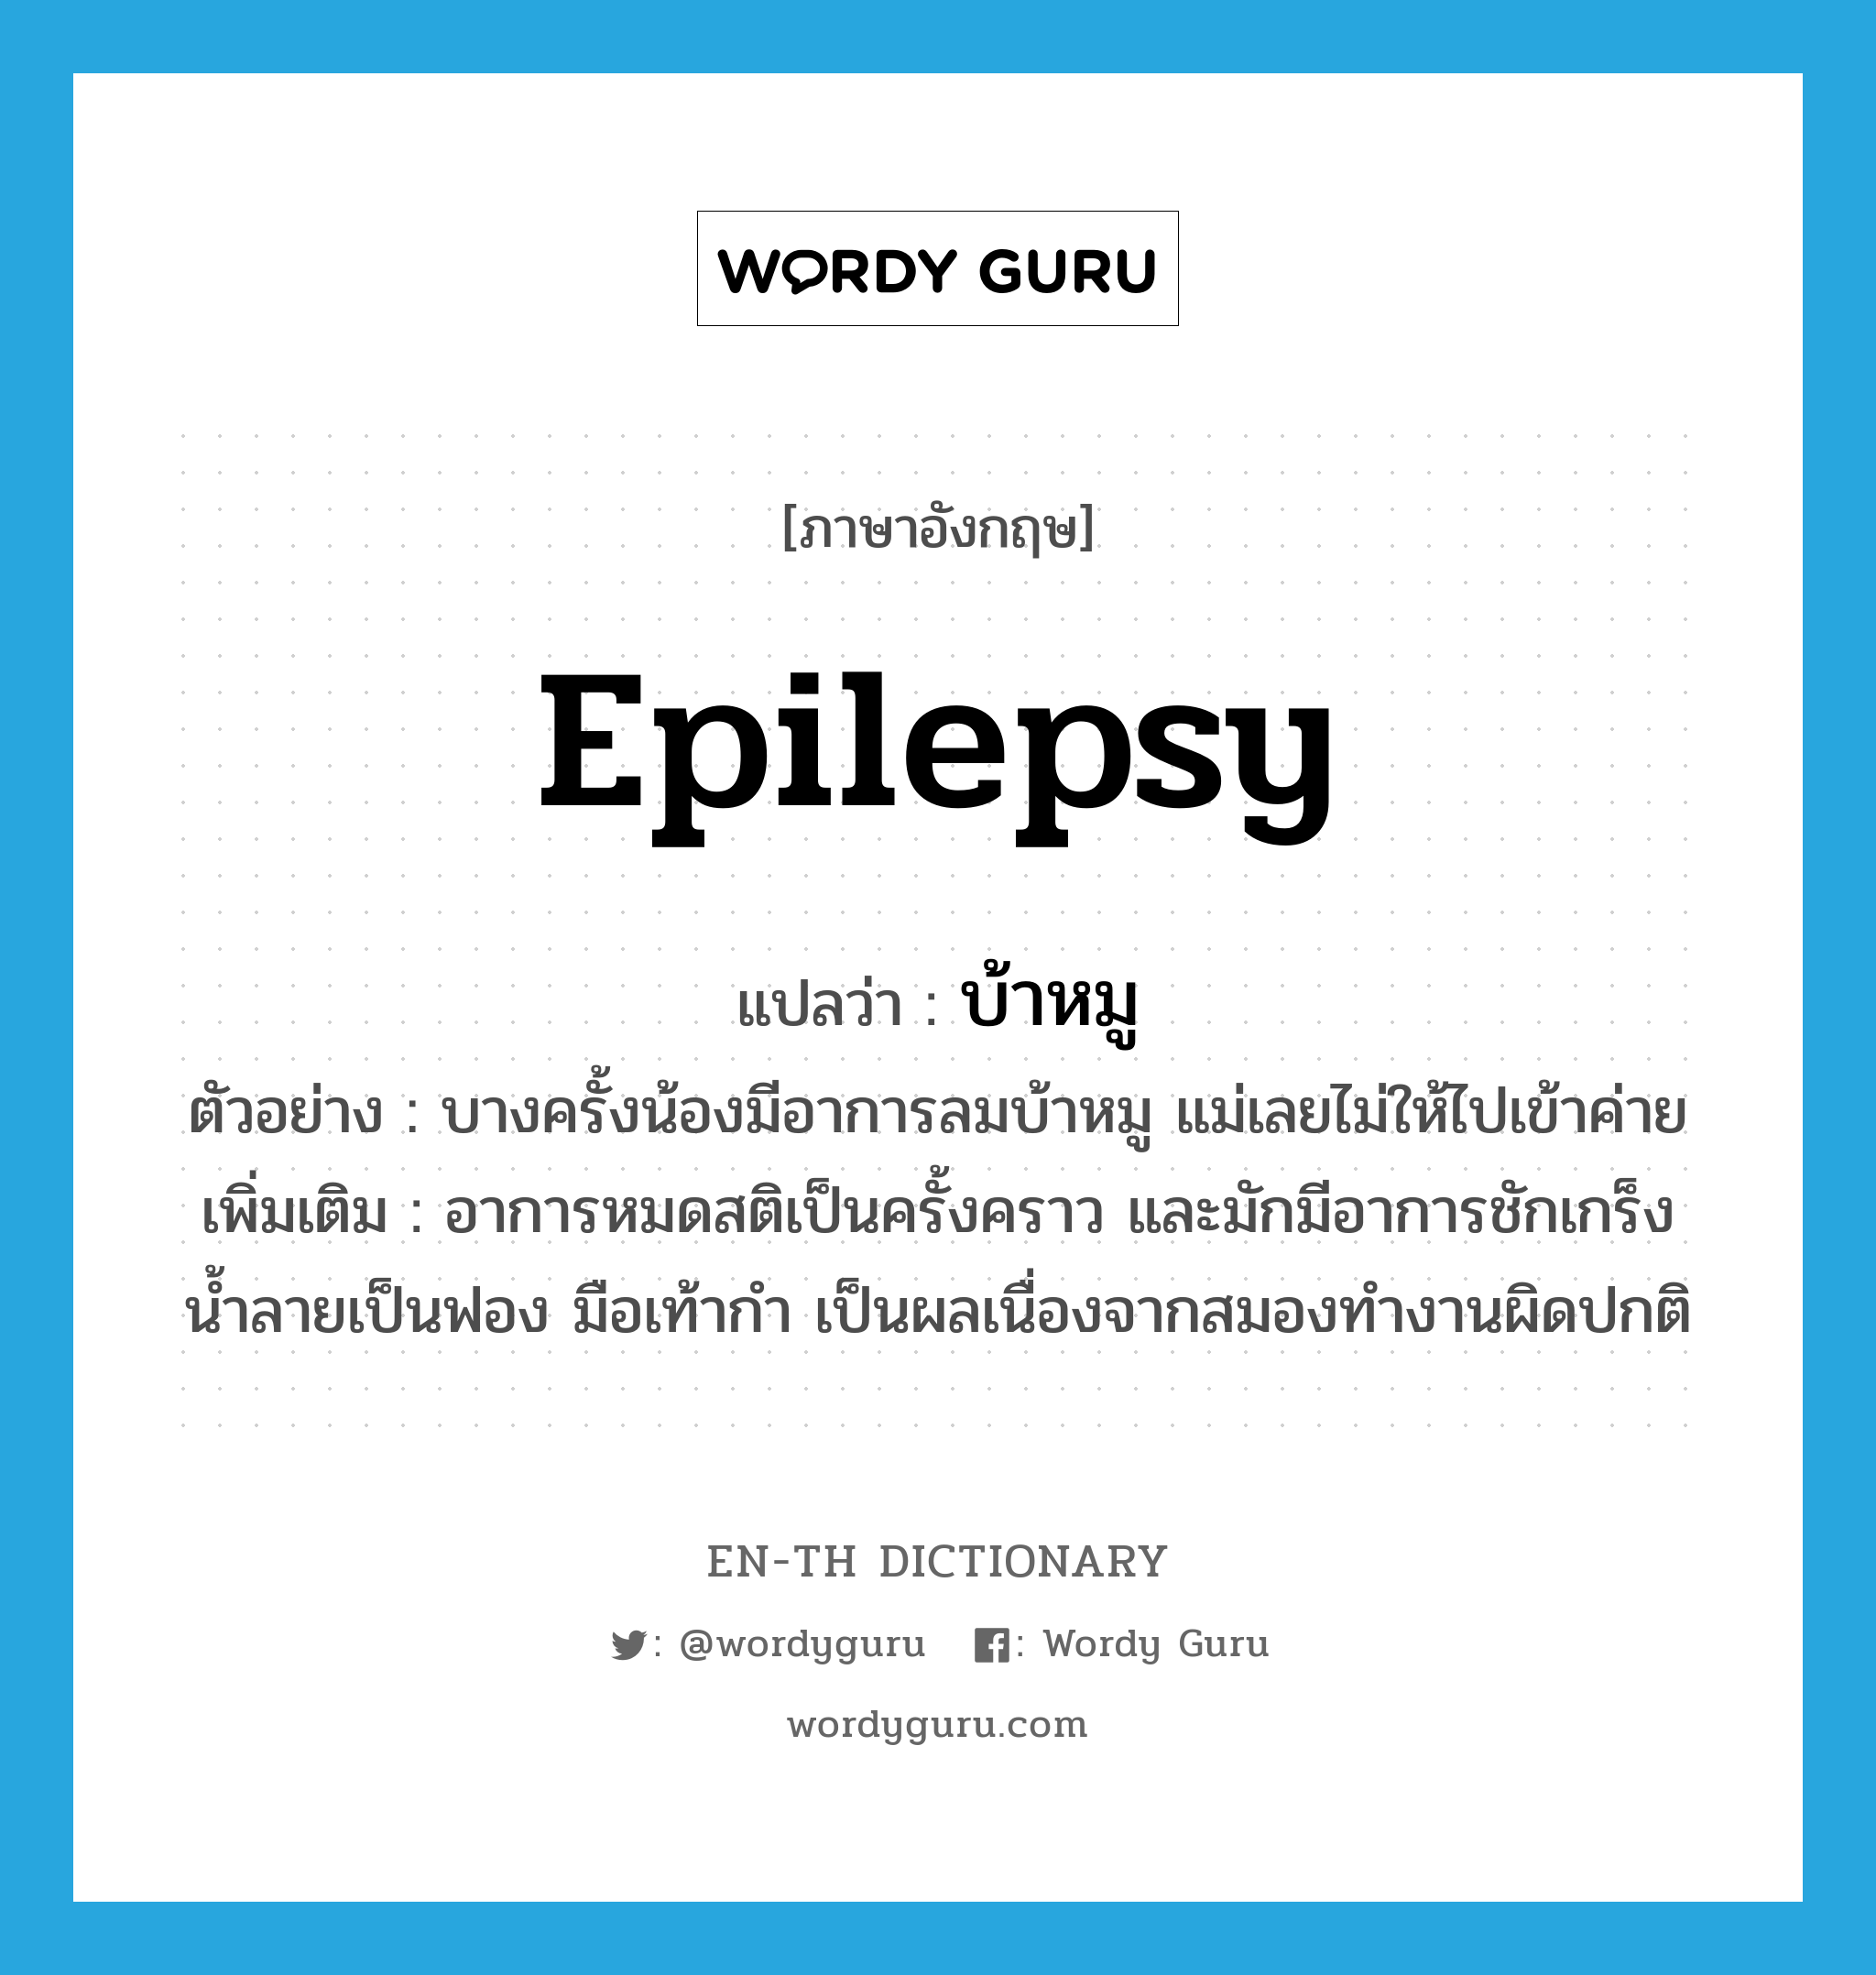 บ้าหมู ภาษาอังกฤษ?, คำศัพท์ภาษาอังกฤษ บ้าหมู แปลว่า epilepsy ประเภท N ตัวอย่าง บางครั้งน้องมีอาการลมบ้าหมู แม่เลยไม่ให้ไปเข้าค่าย เพิ่มเติม อาการหมดสติเป็นครั้งคราว และมักมีอาการชักเกร็ง น้ำลายเป็นฟอง มือเท้ากำ เป็นผลเนื่องจากสมองทำงานผิดปกติ หมวด N